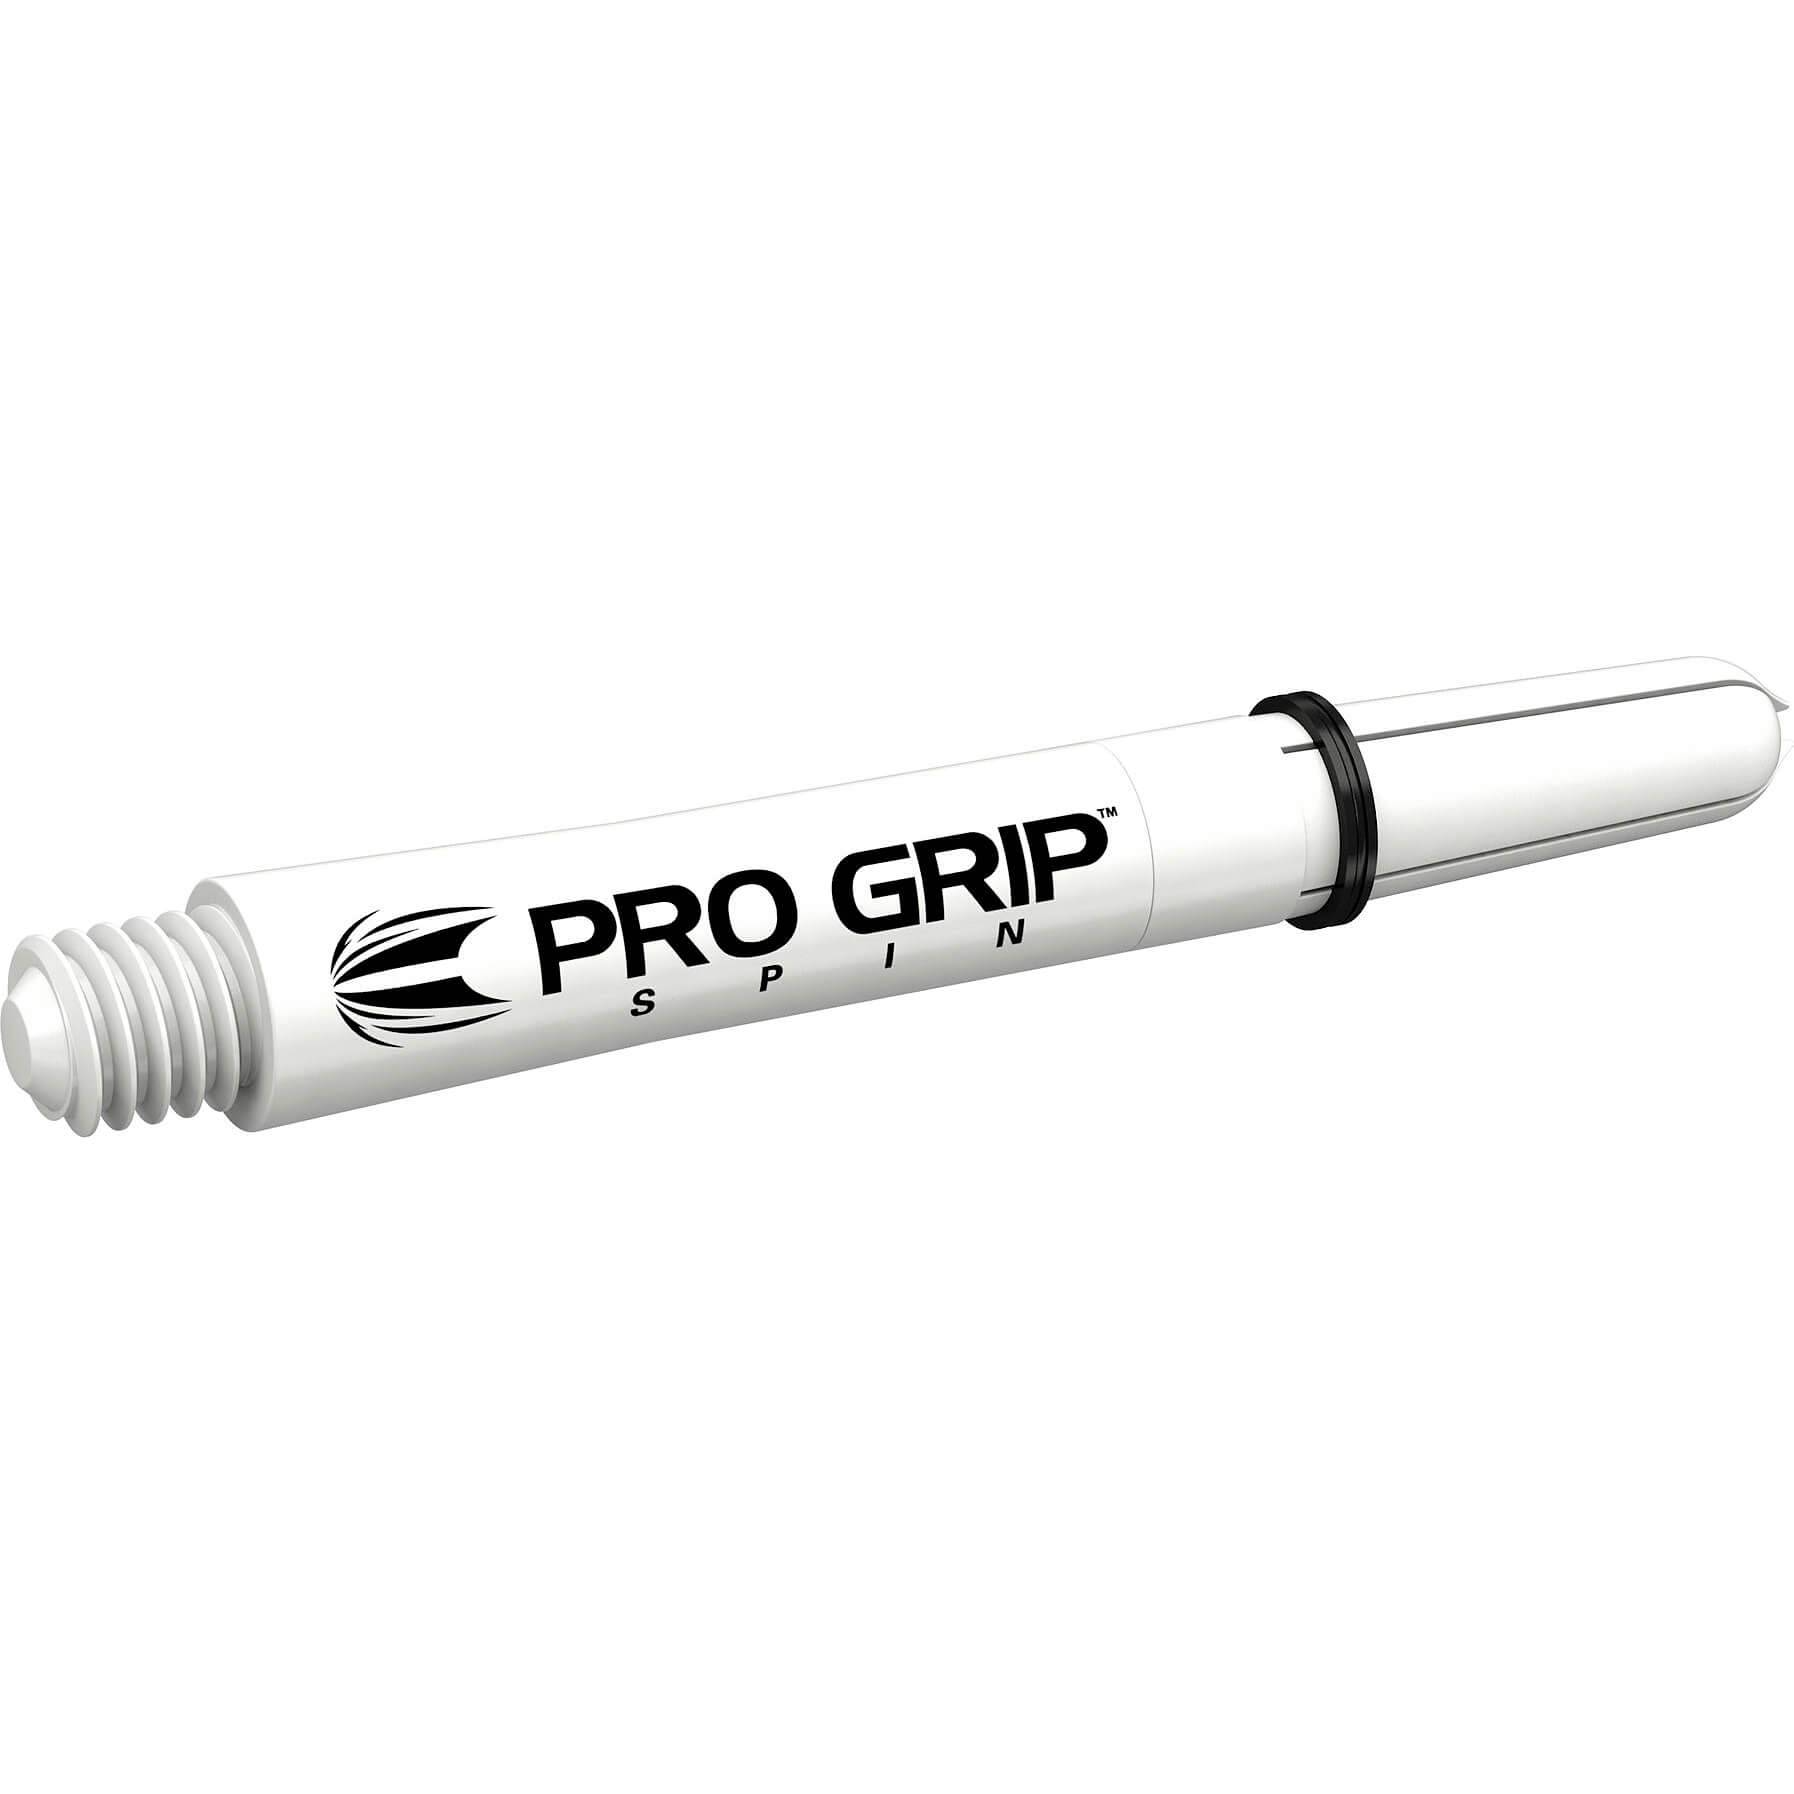 Target Pro Grip Spin Shaft - White